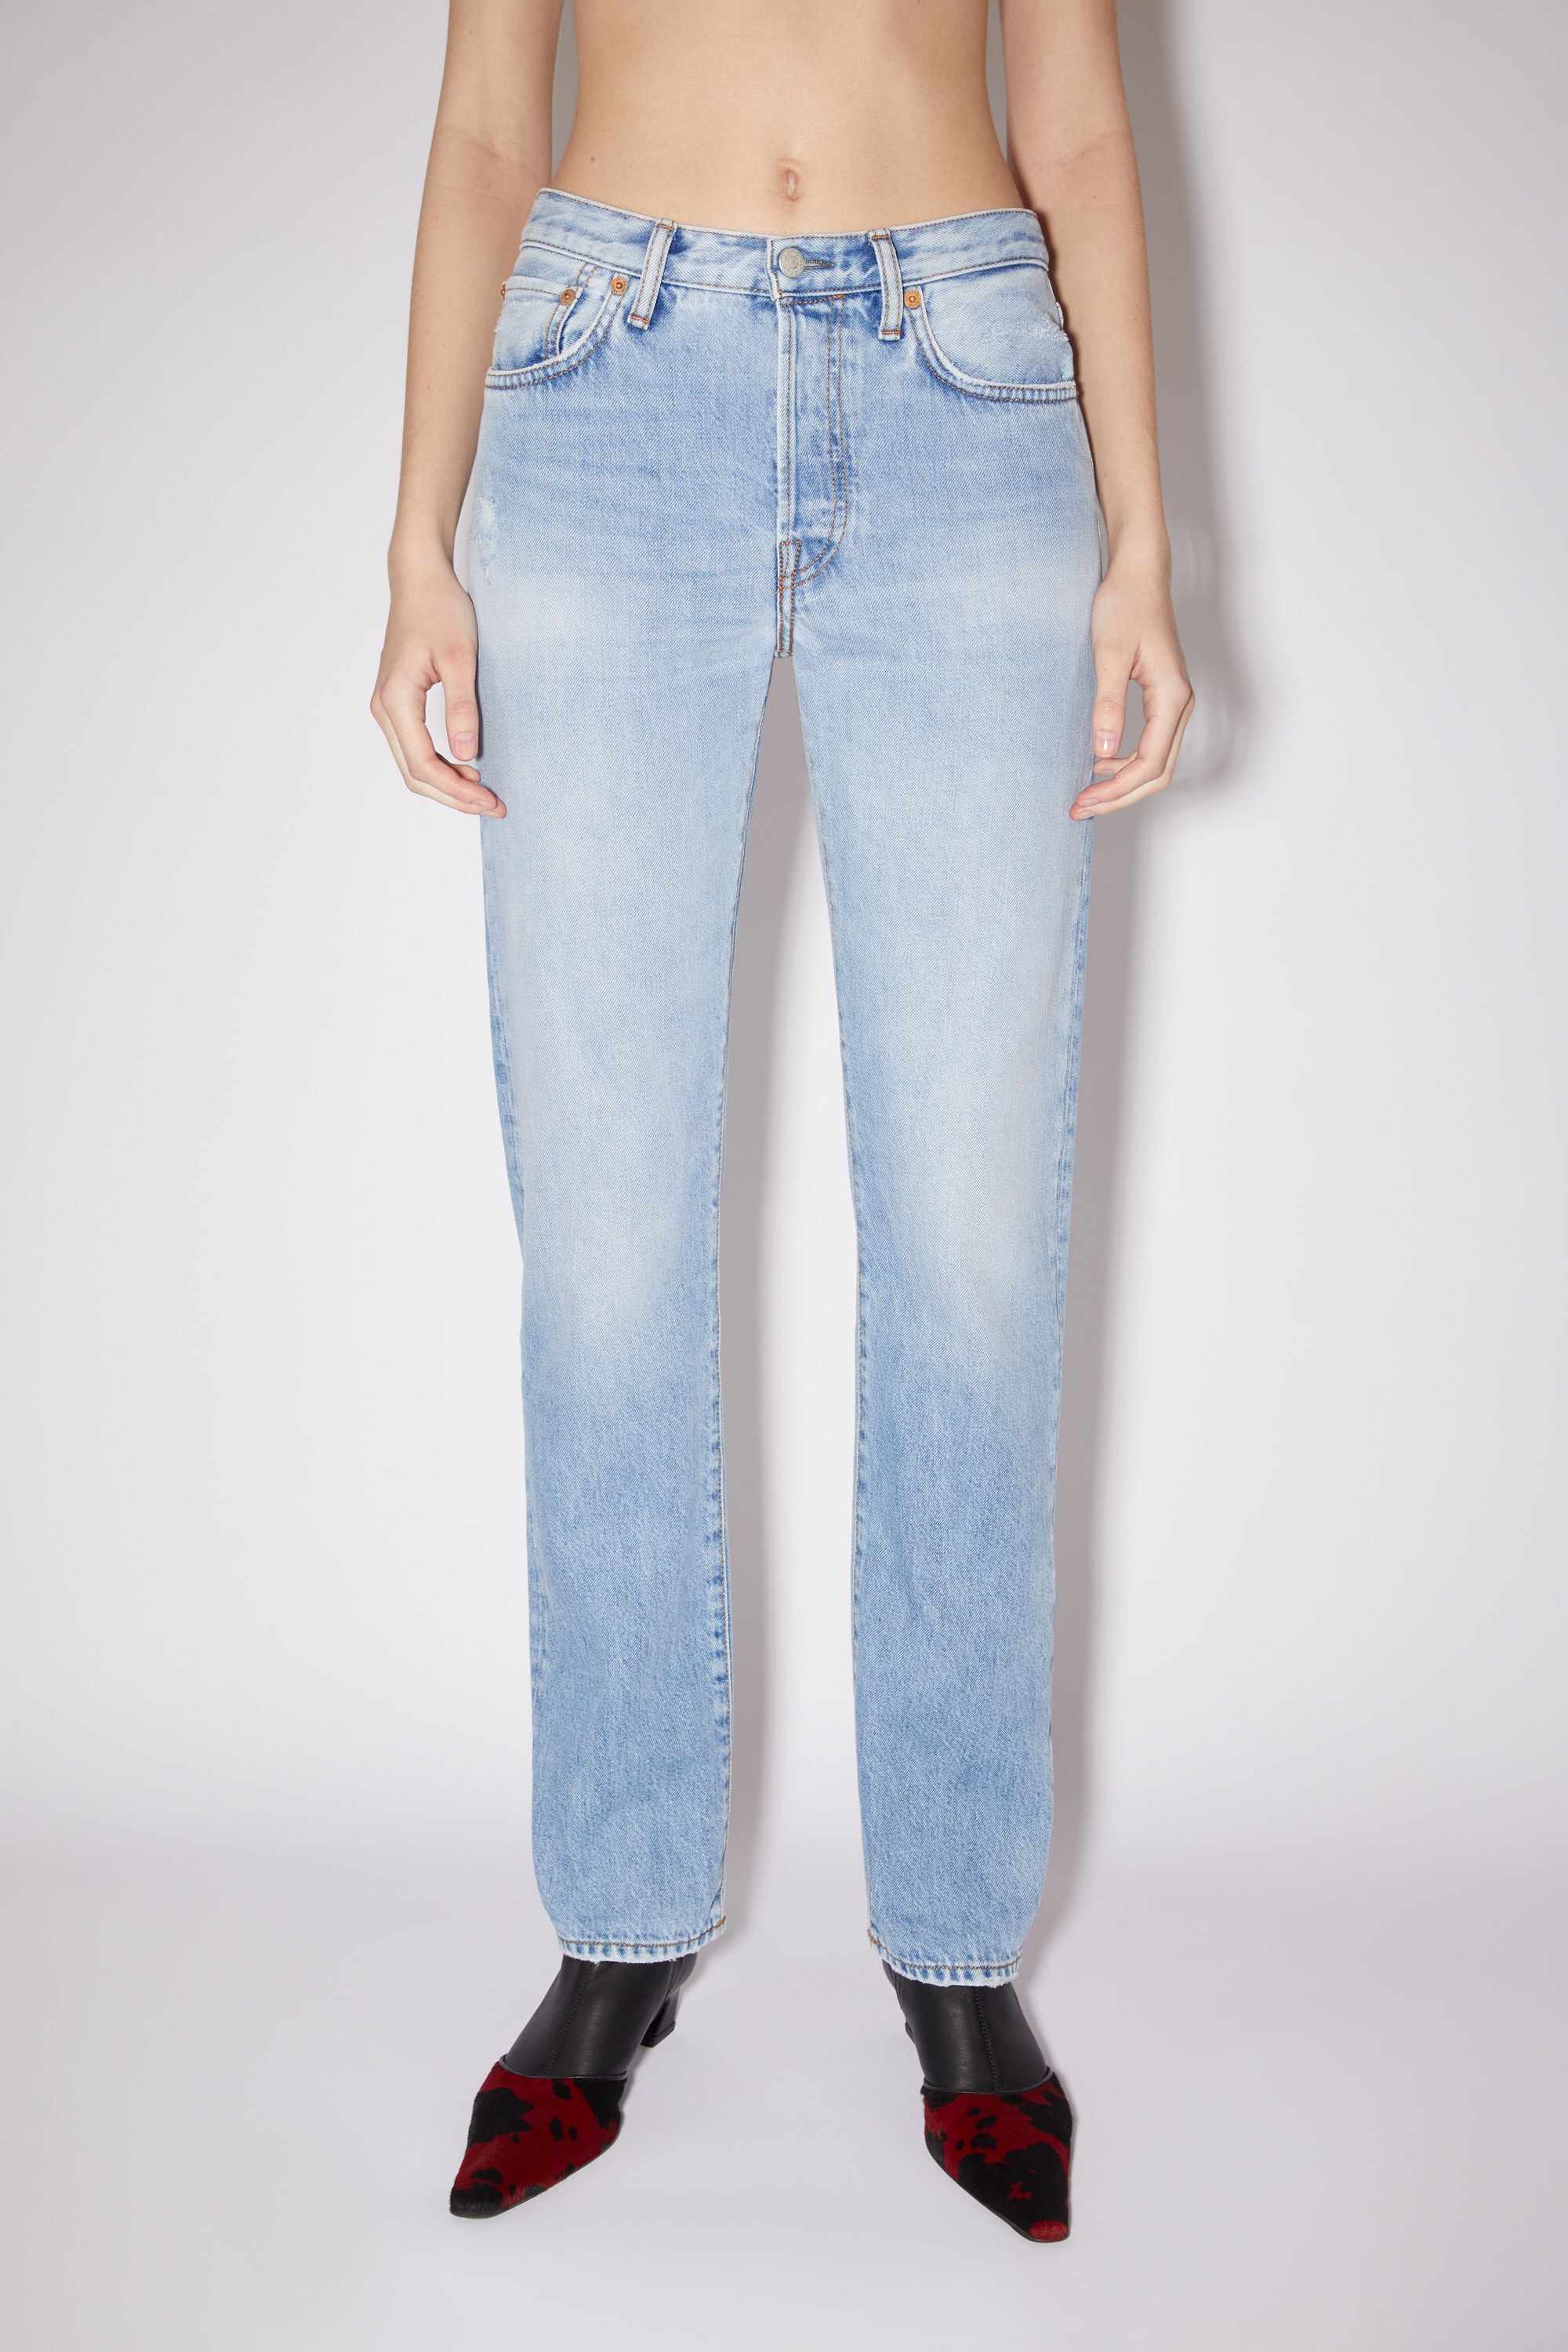 Regular fit jeans - 1997 - Light blue - 2